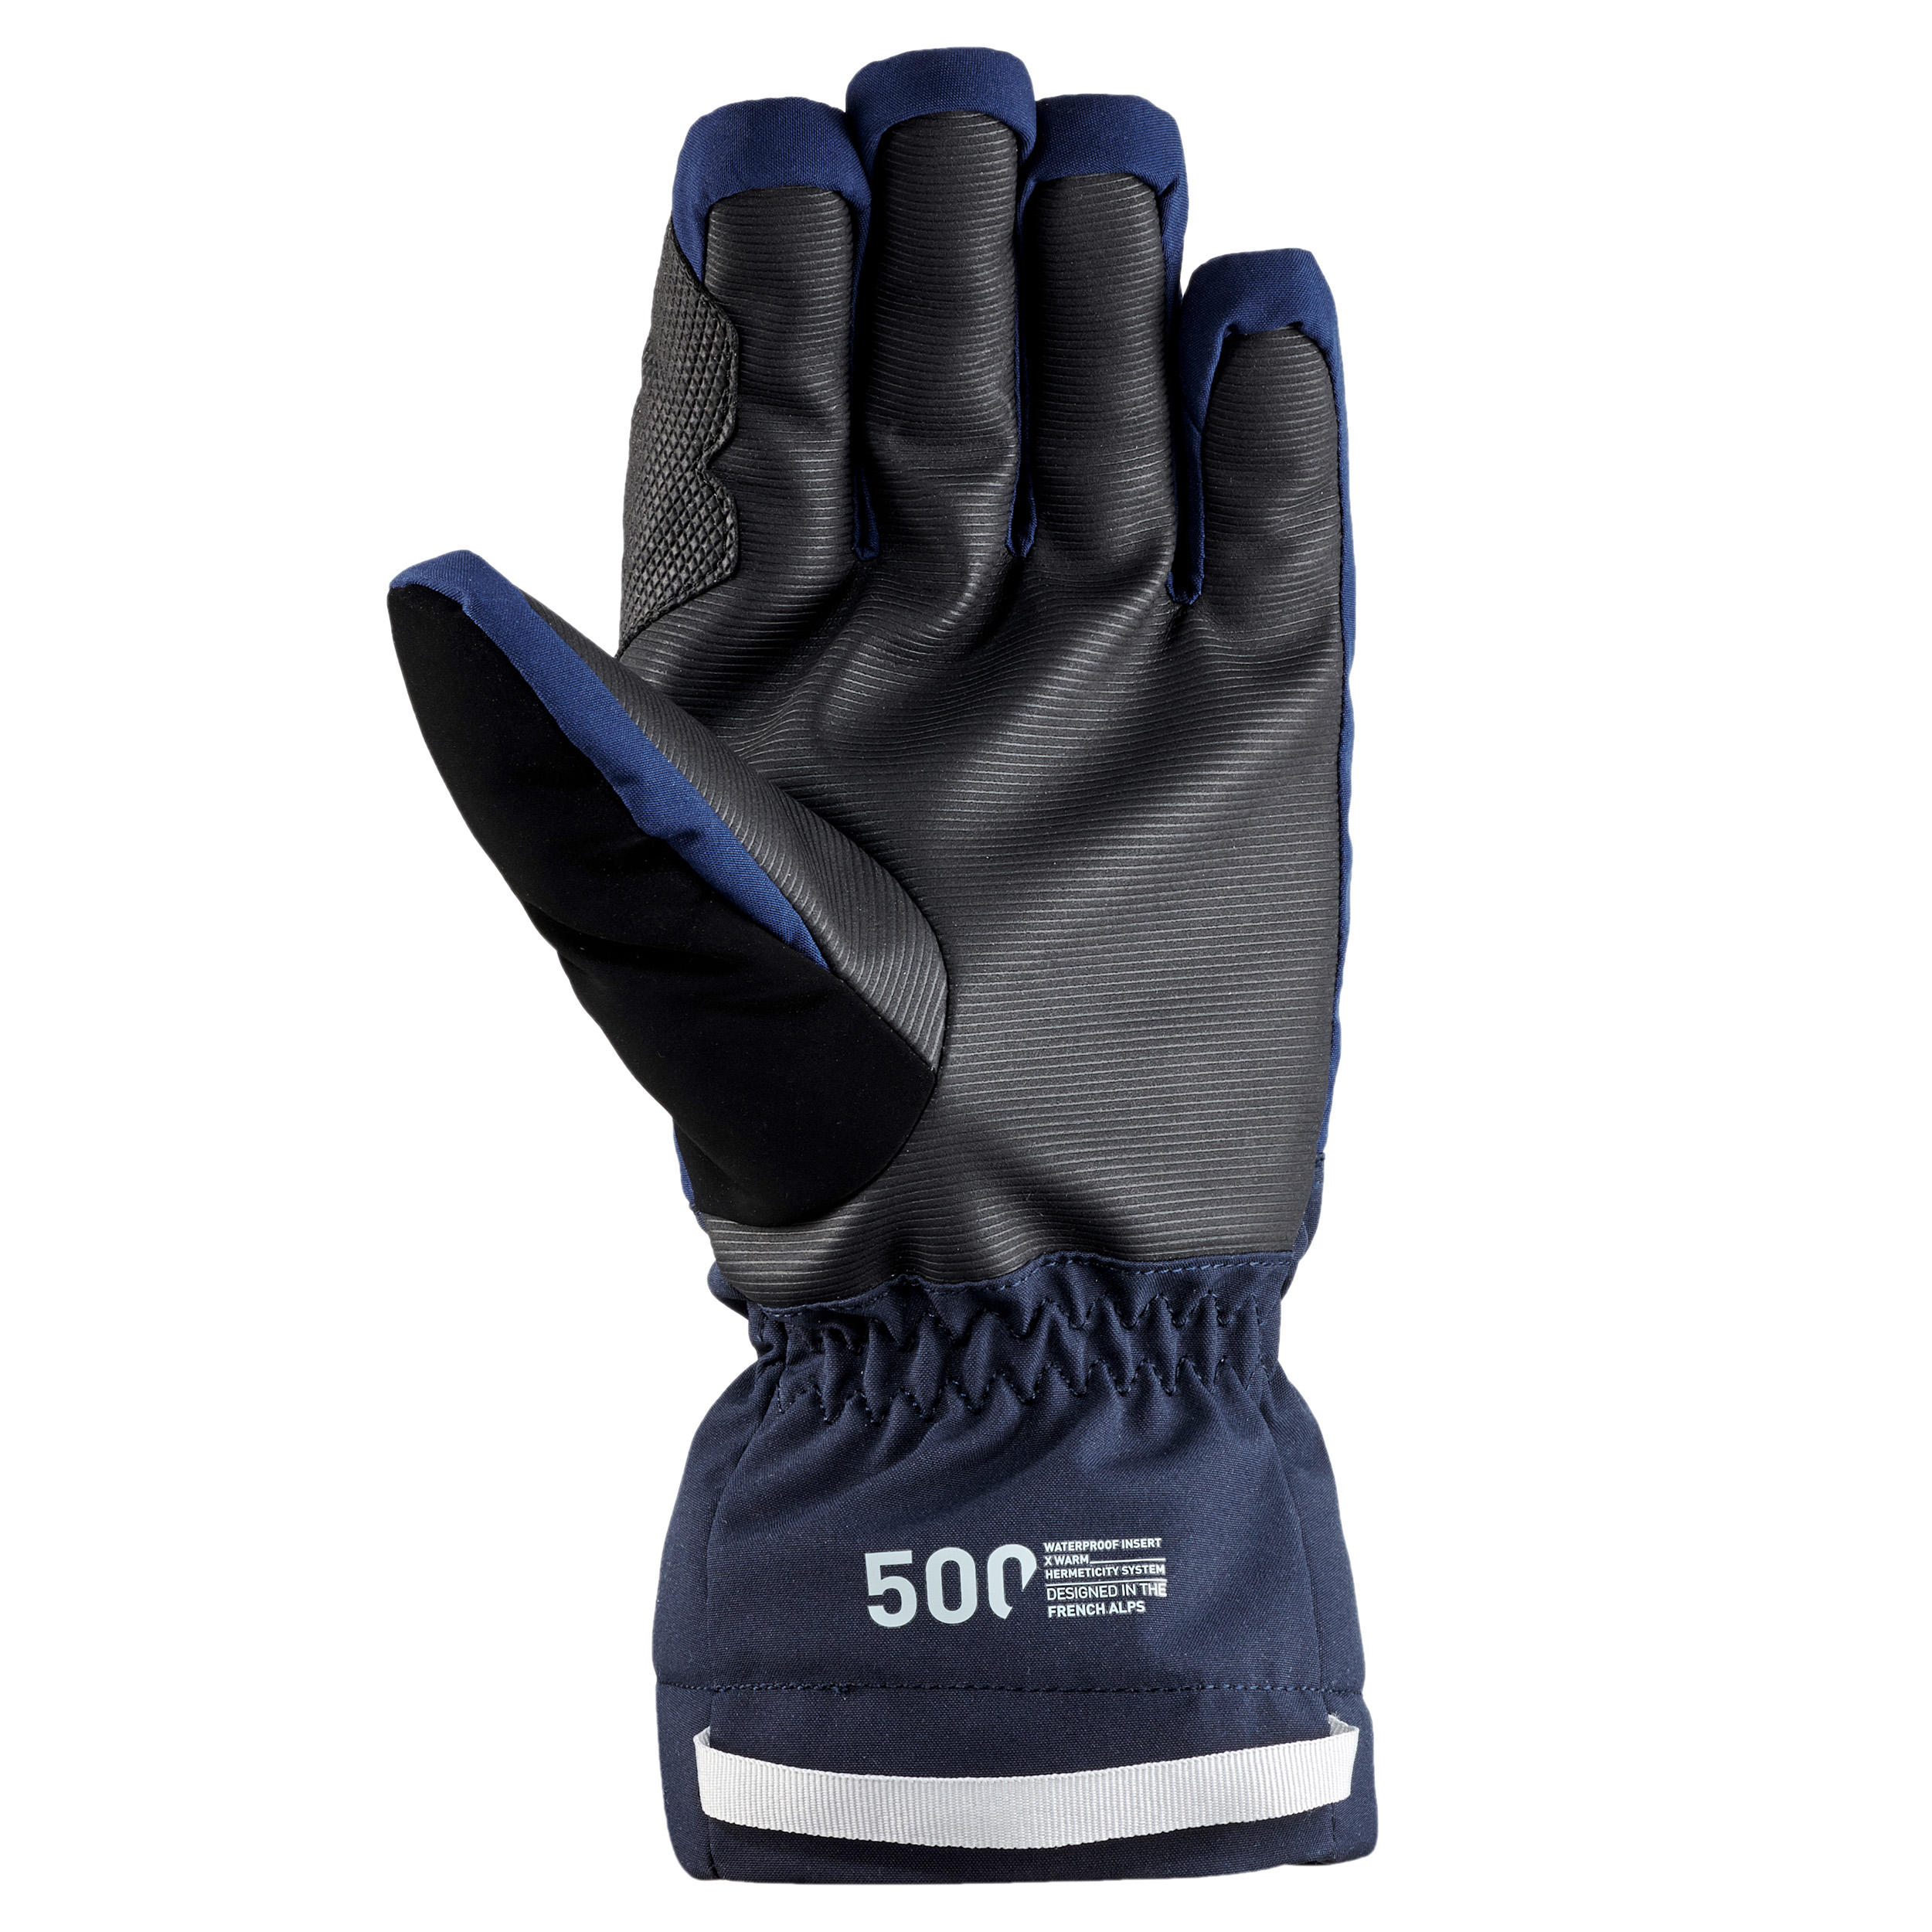 navy blue ski gloves